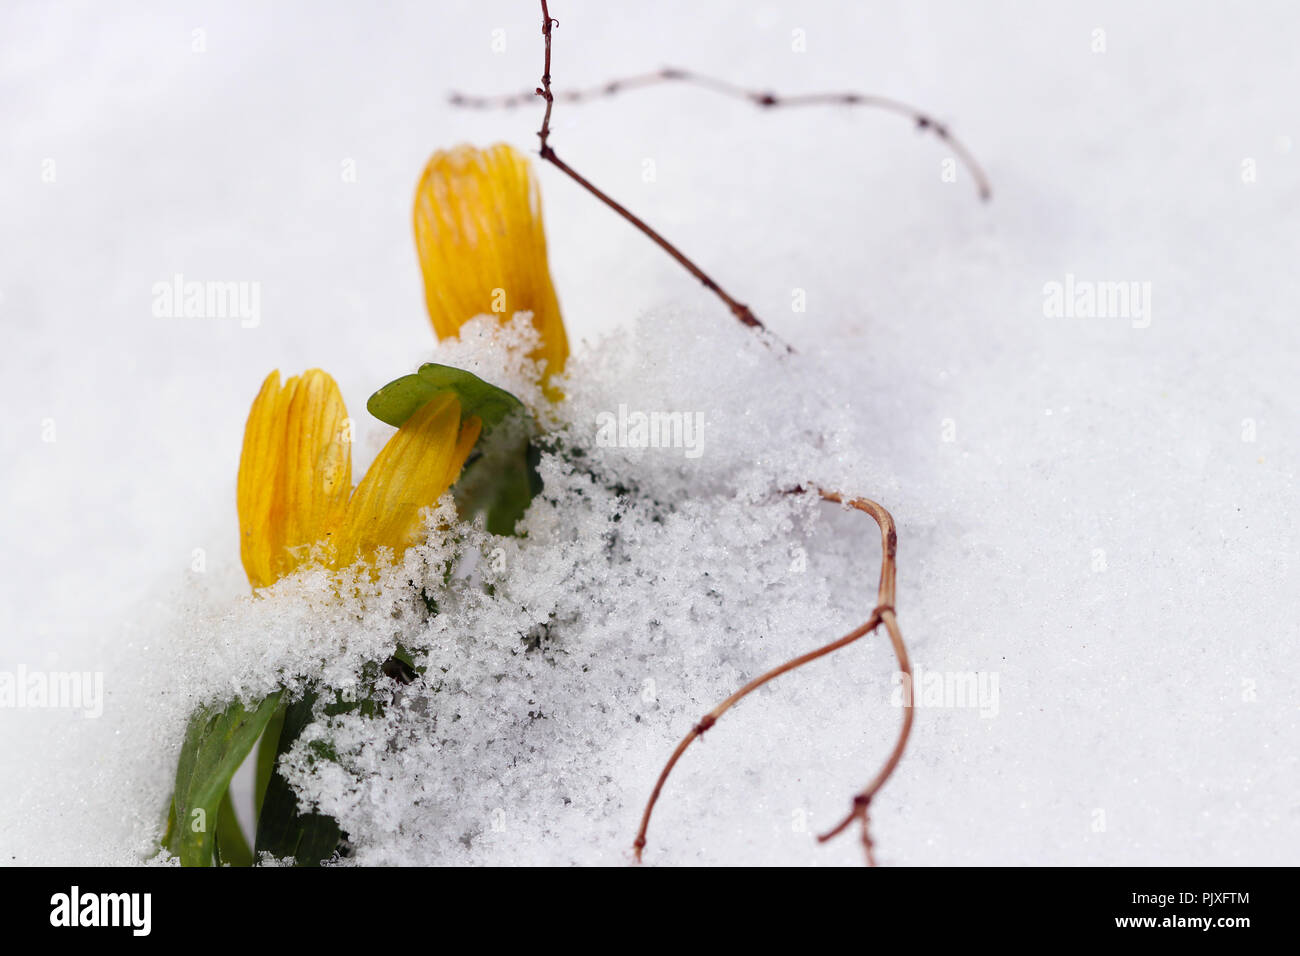 Dettaglio della fioritura aconitum invernale sulla neve Foto Stock